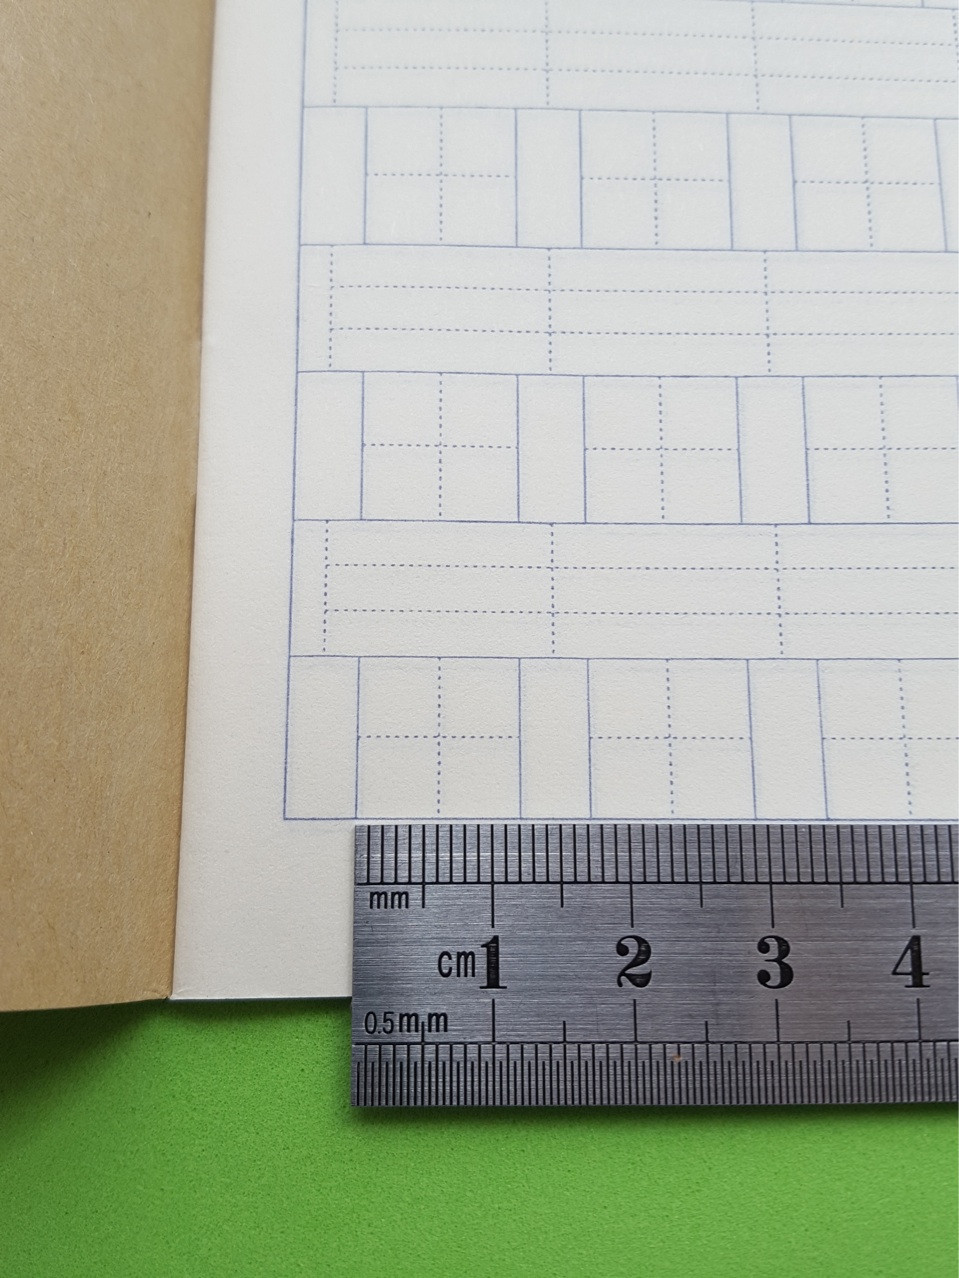 Тетрадь для написания иероглифов. Клетка 12 мм с пунктиром и расширенным полем для пиньинь. 1372 клетки